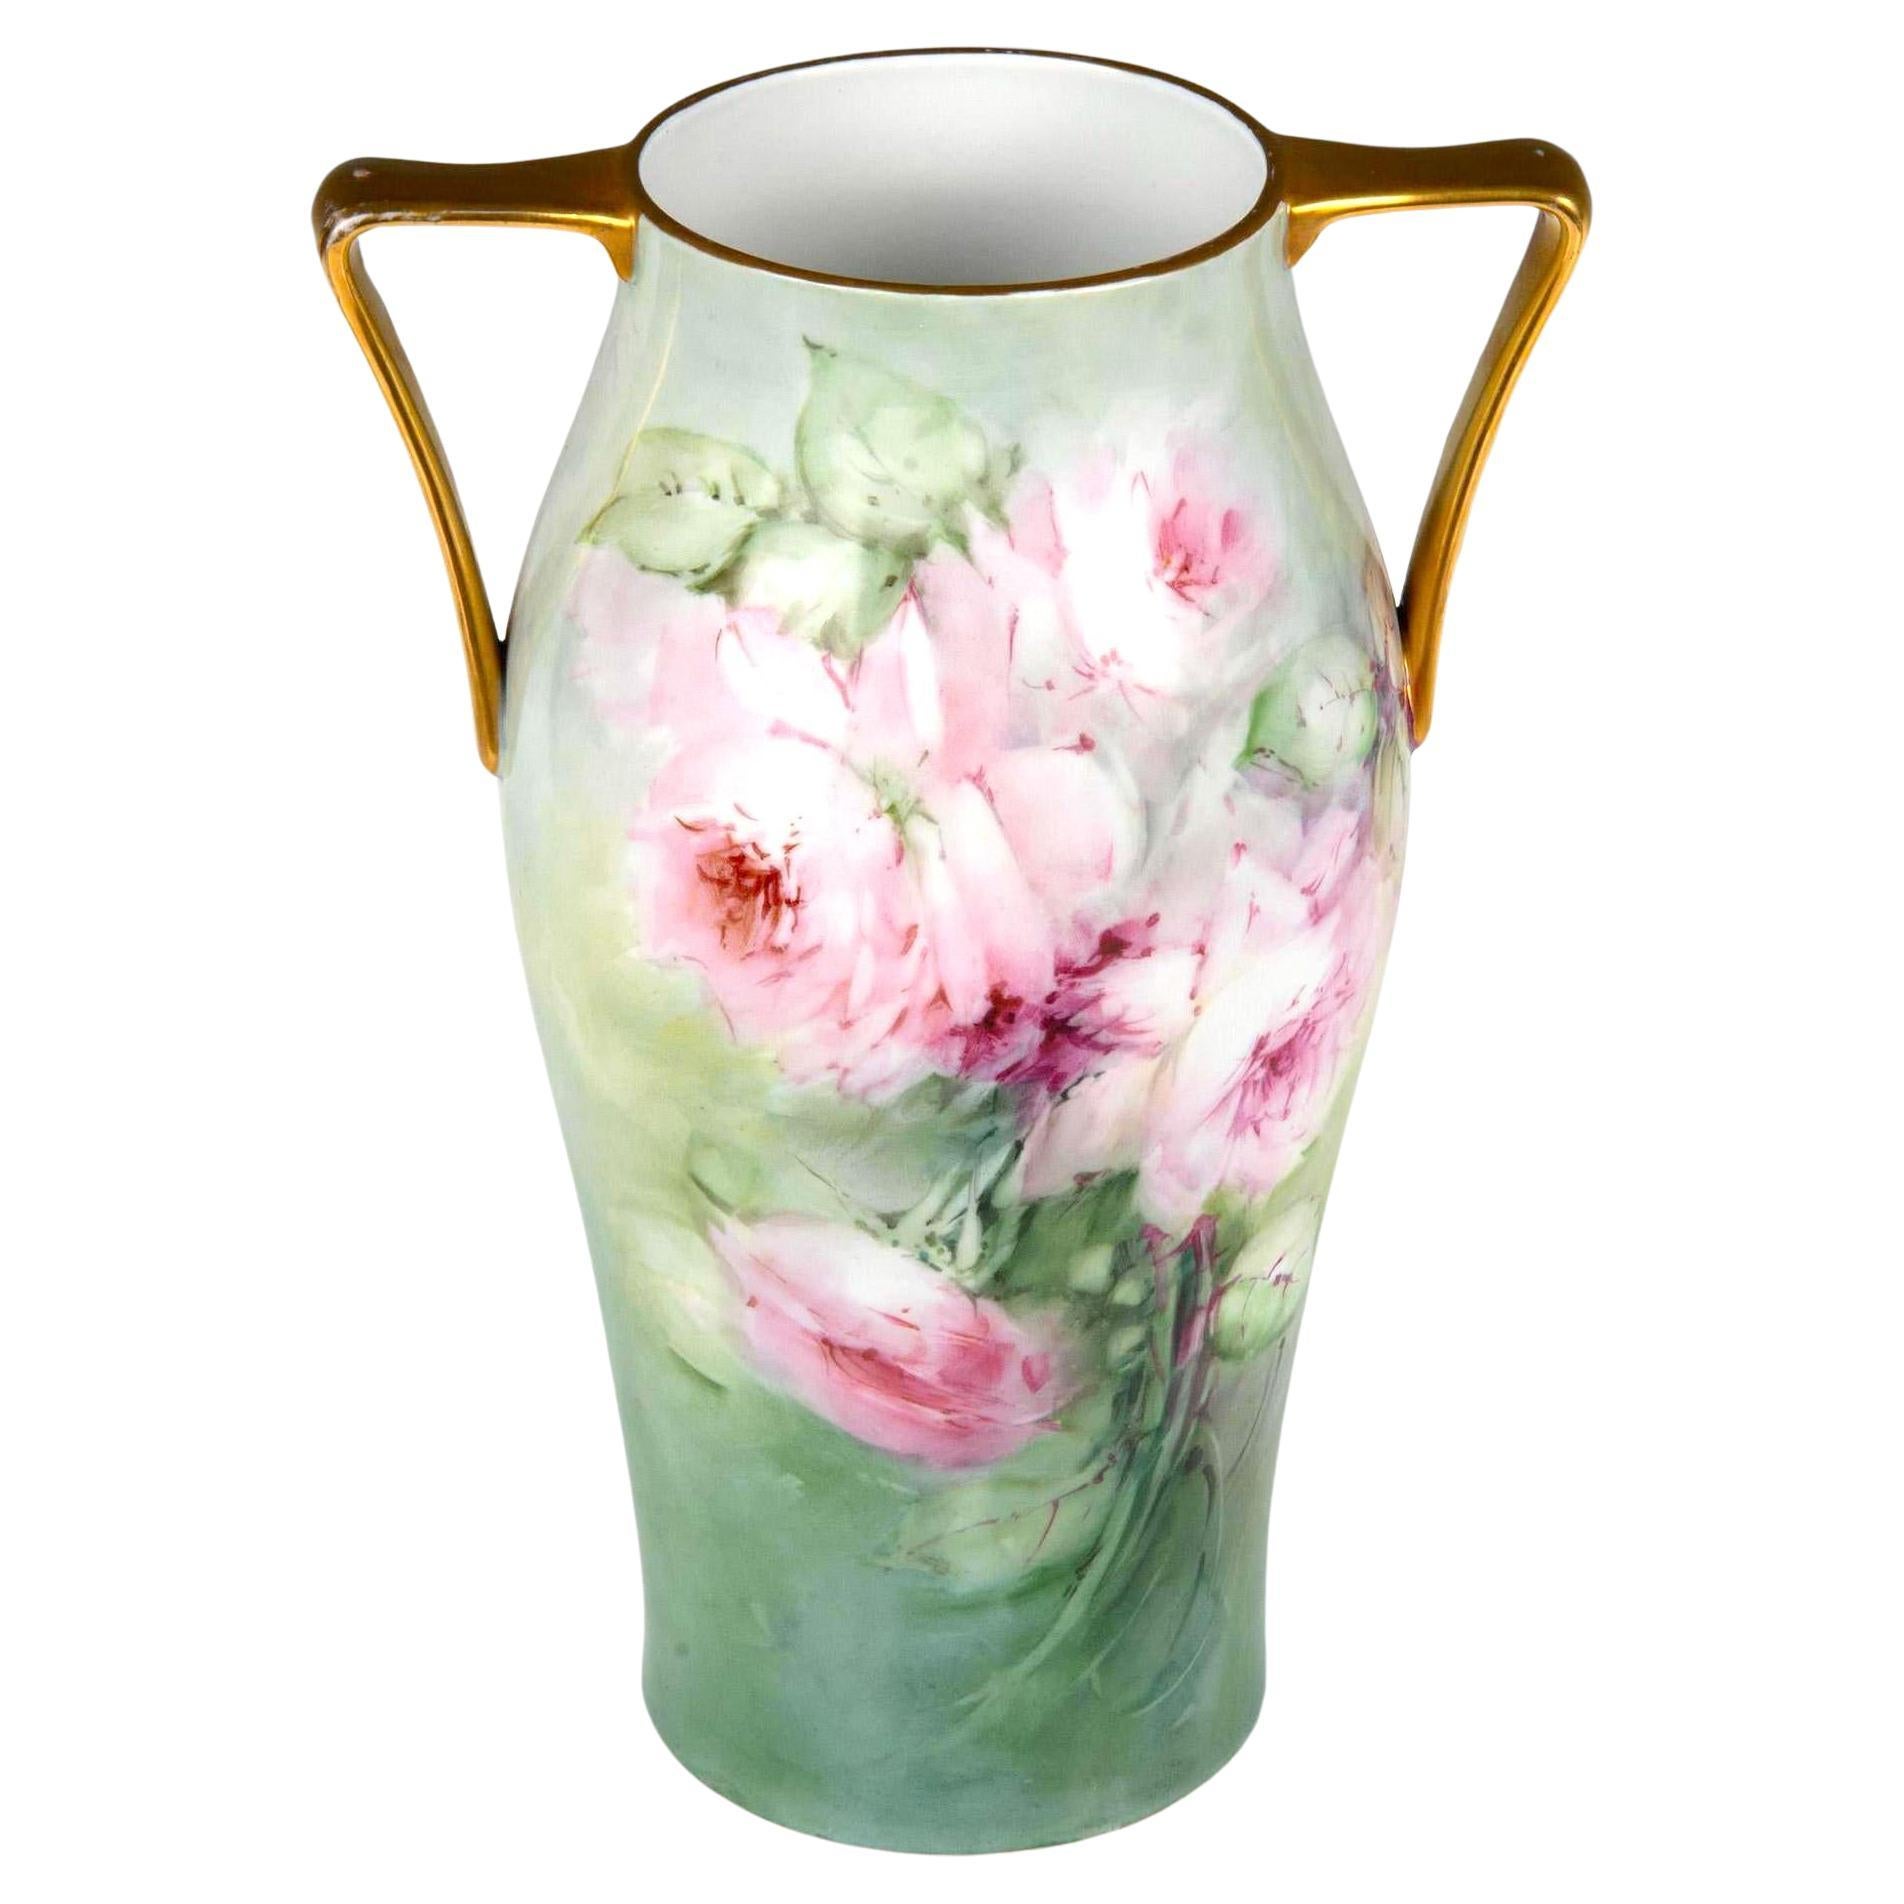 Grand vase à double poignée en porcelaine bavaroise peint à la main roses et or